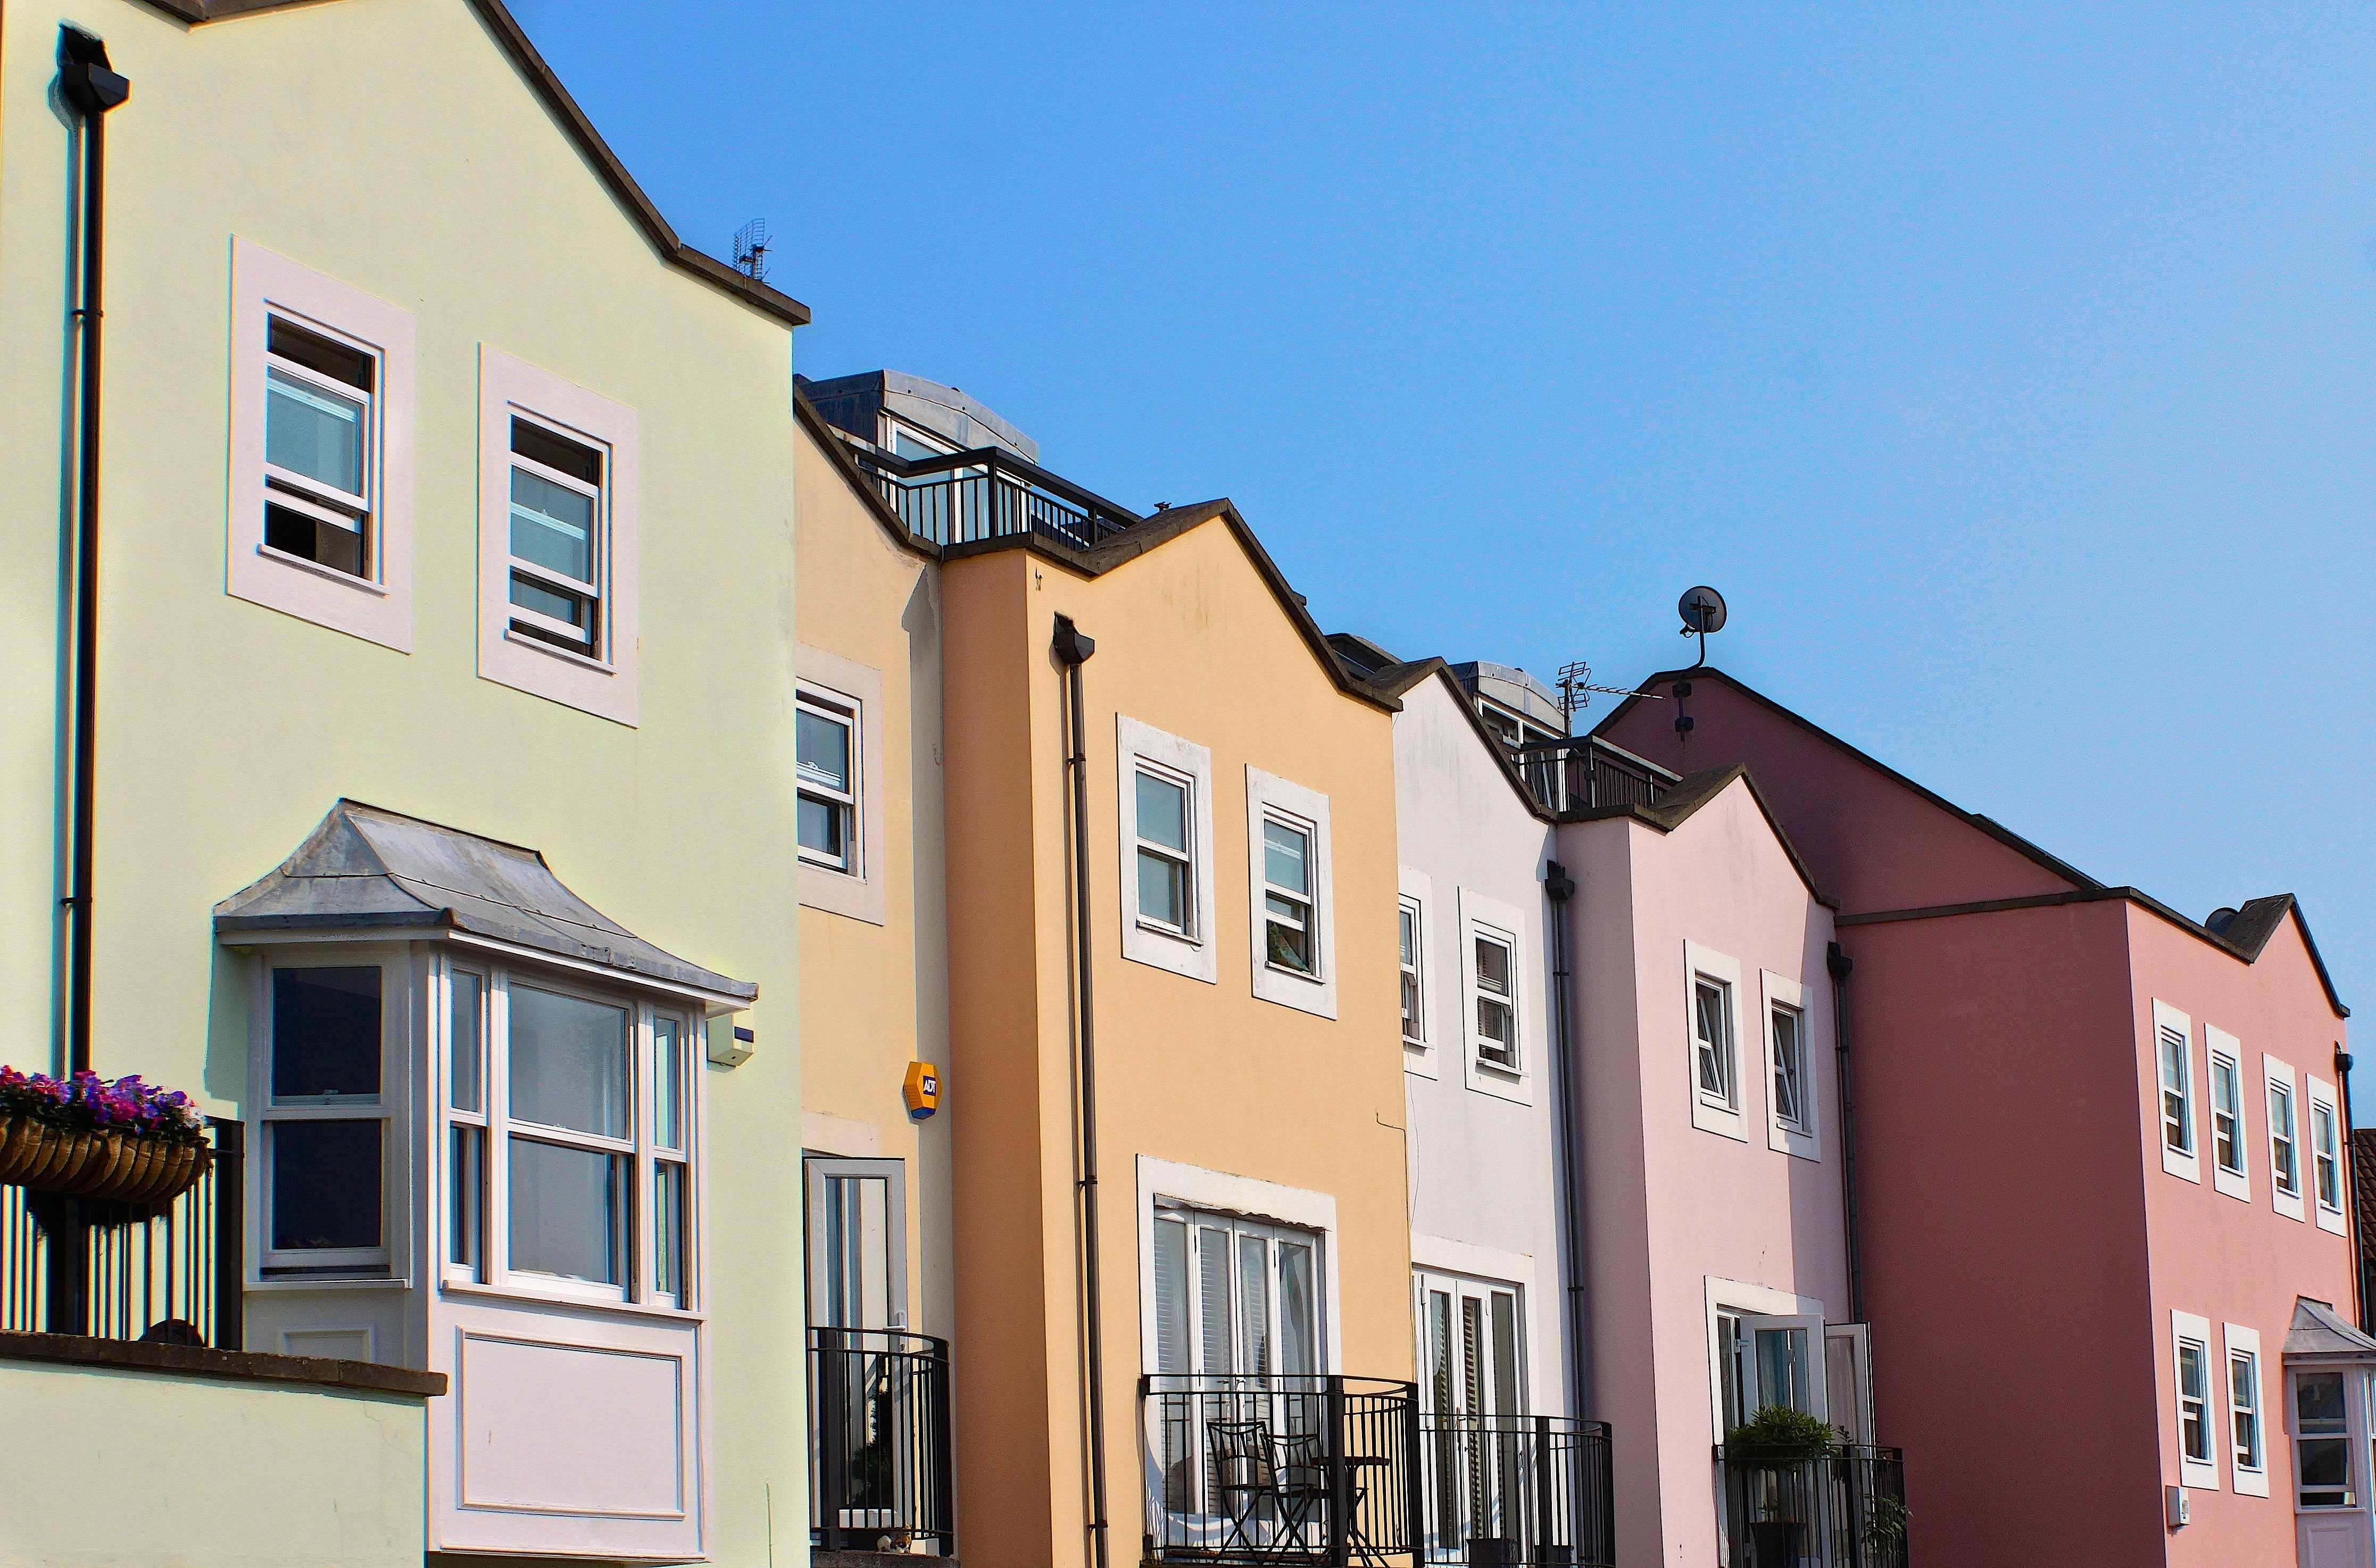 En la imagen puedes ver varias casas, unas junto a otras y cuyas fachadas están pintadas de diferentes colores